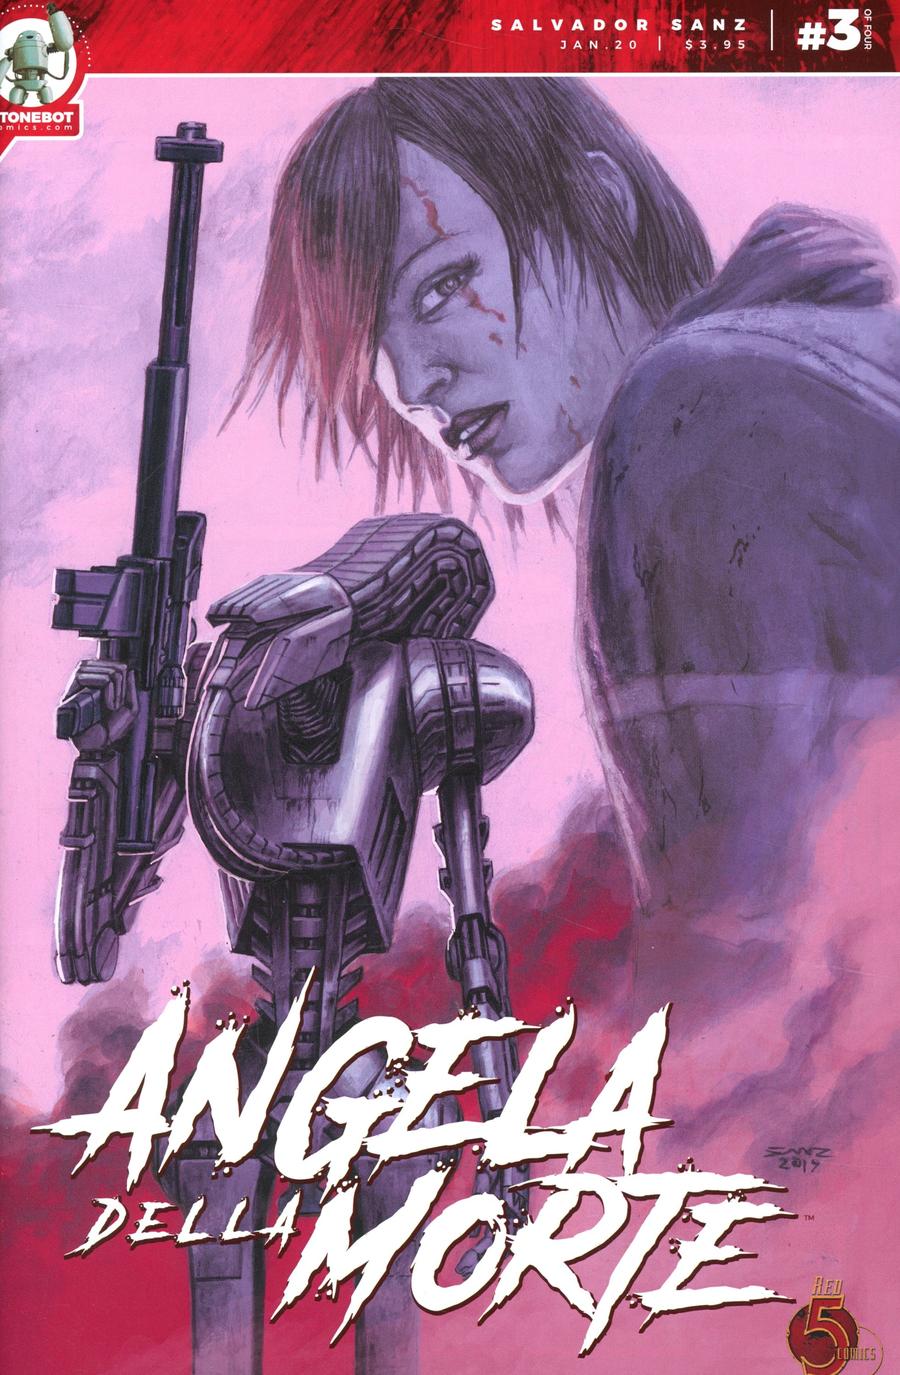 Angela Della Morte #3 (2020)